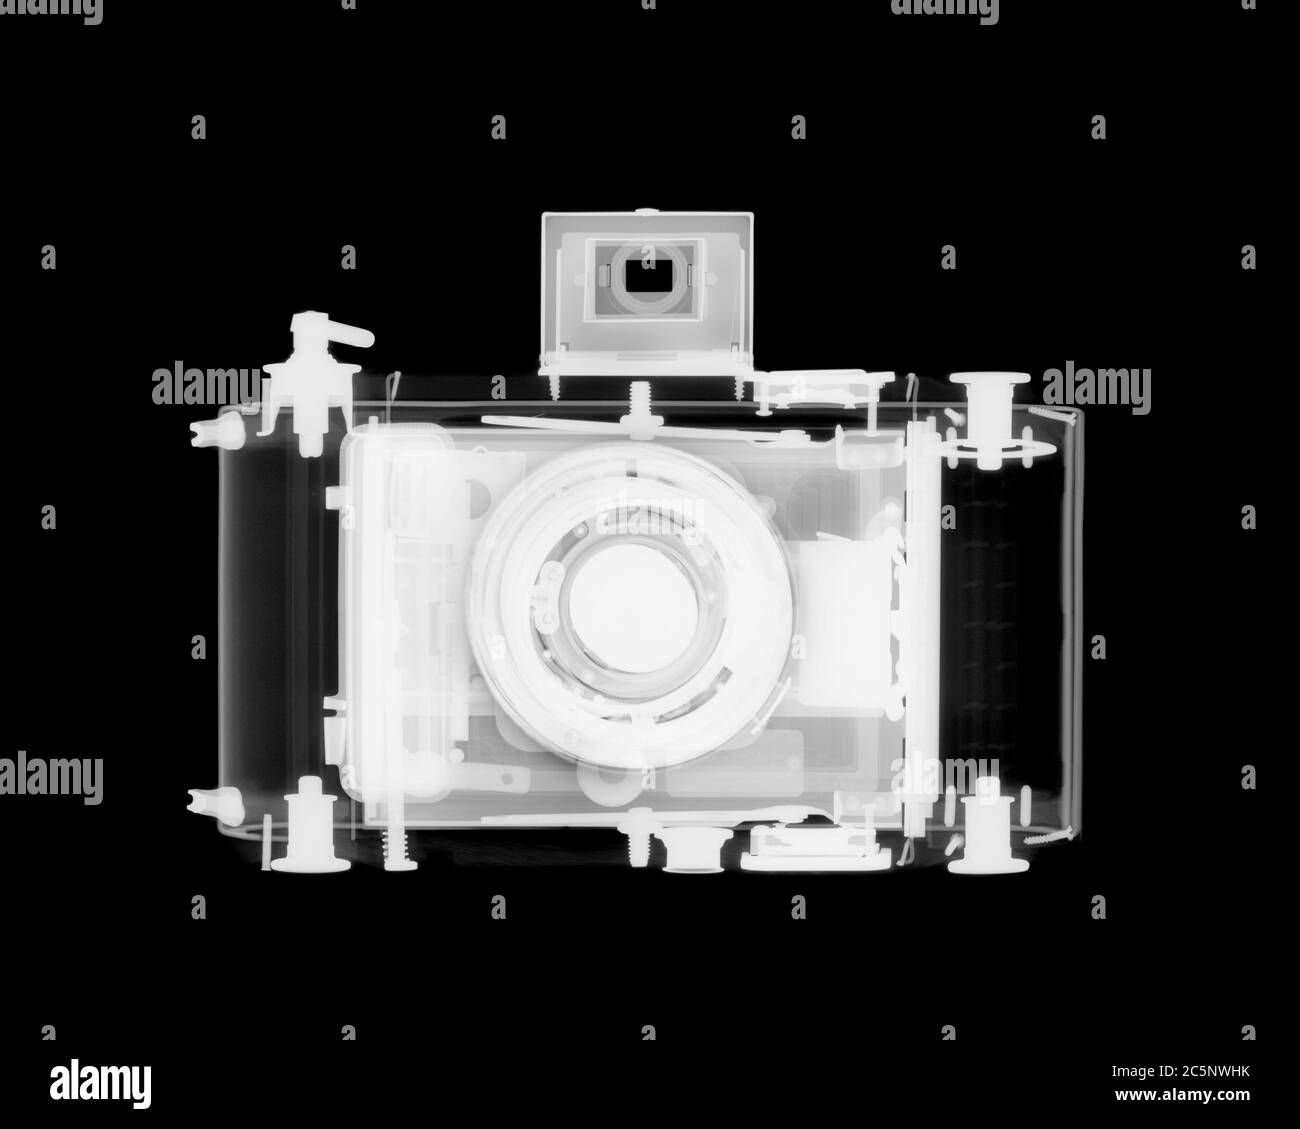 Medium format camera, X-ray. Stock Photo